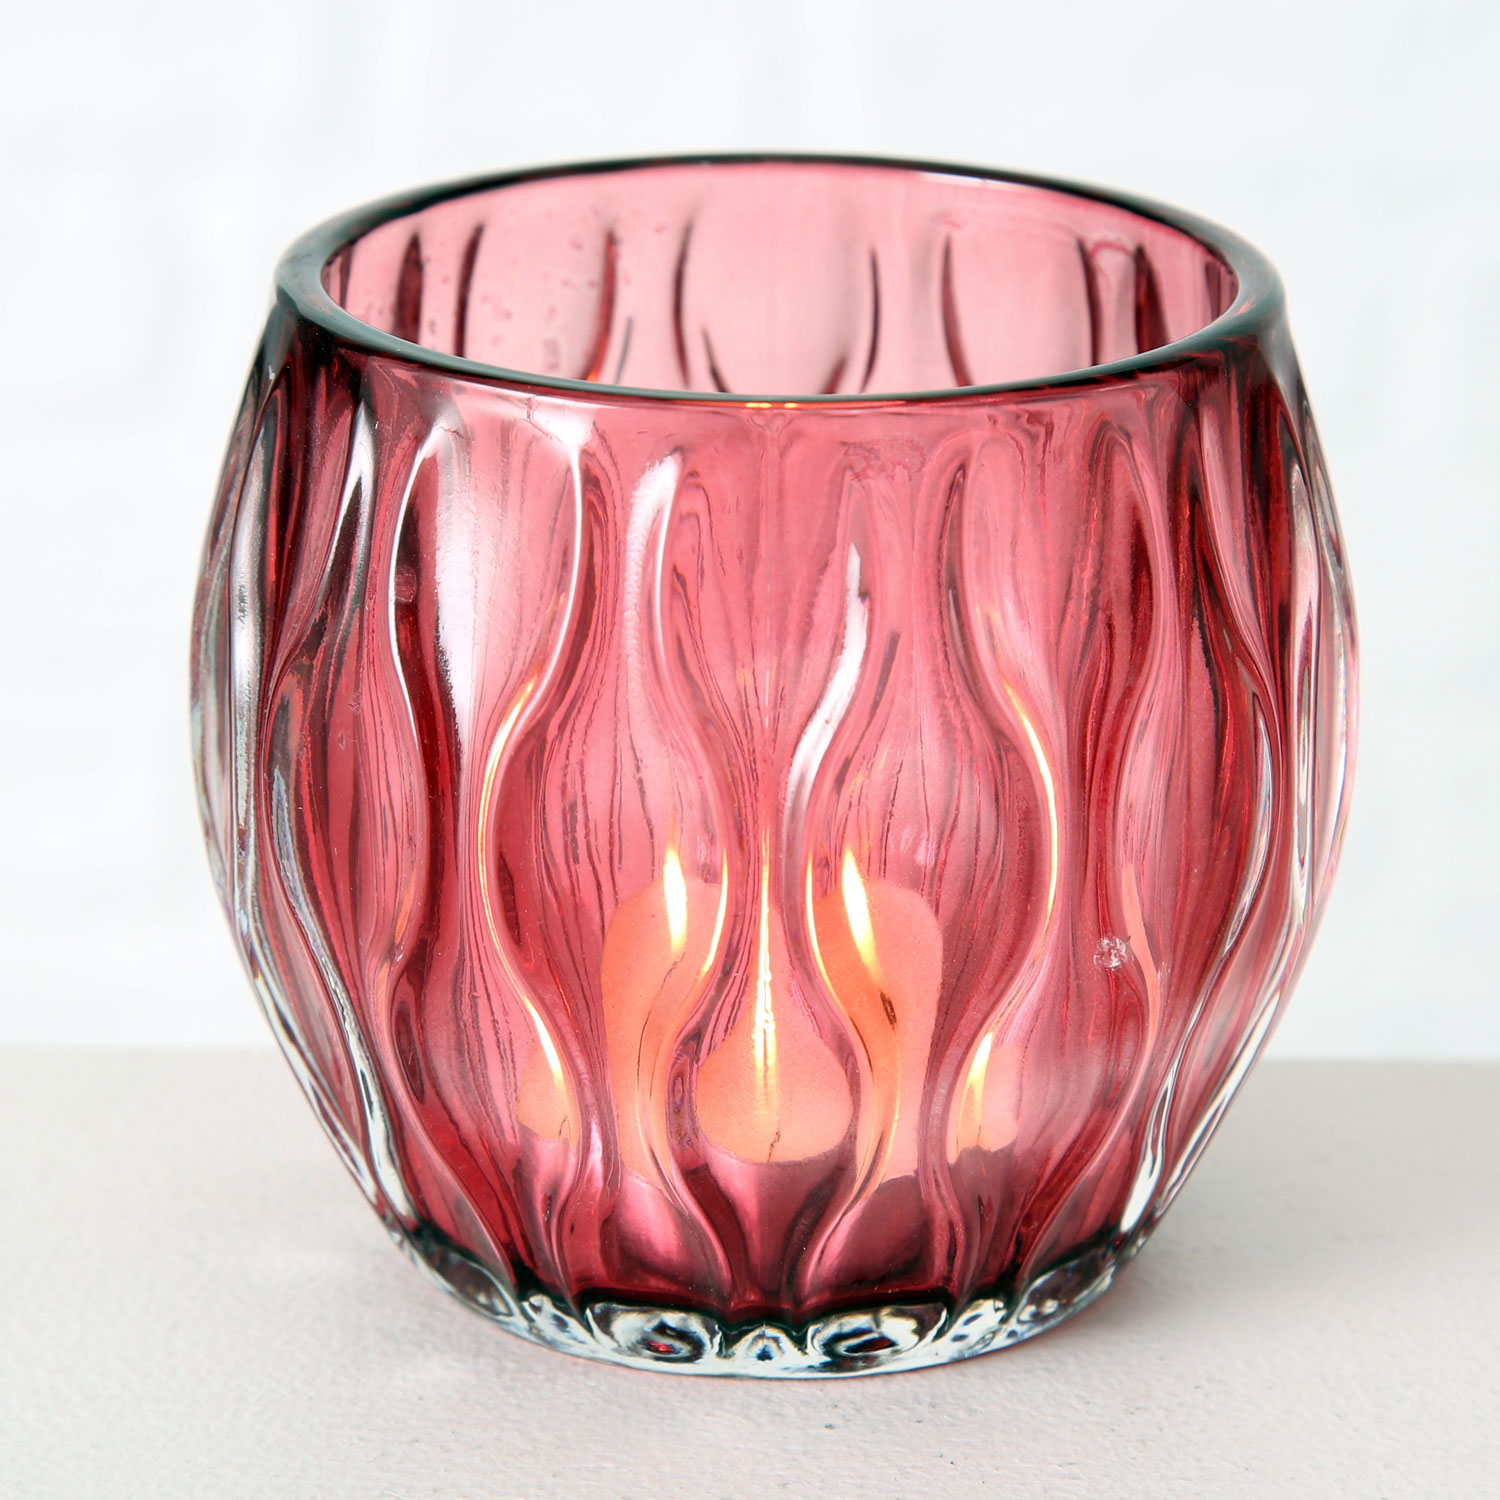 3 Glas Teelichthalter Set Rosa Rose 10cm Teelichtglas Windlicht-Halter |  LS-LebenStil